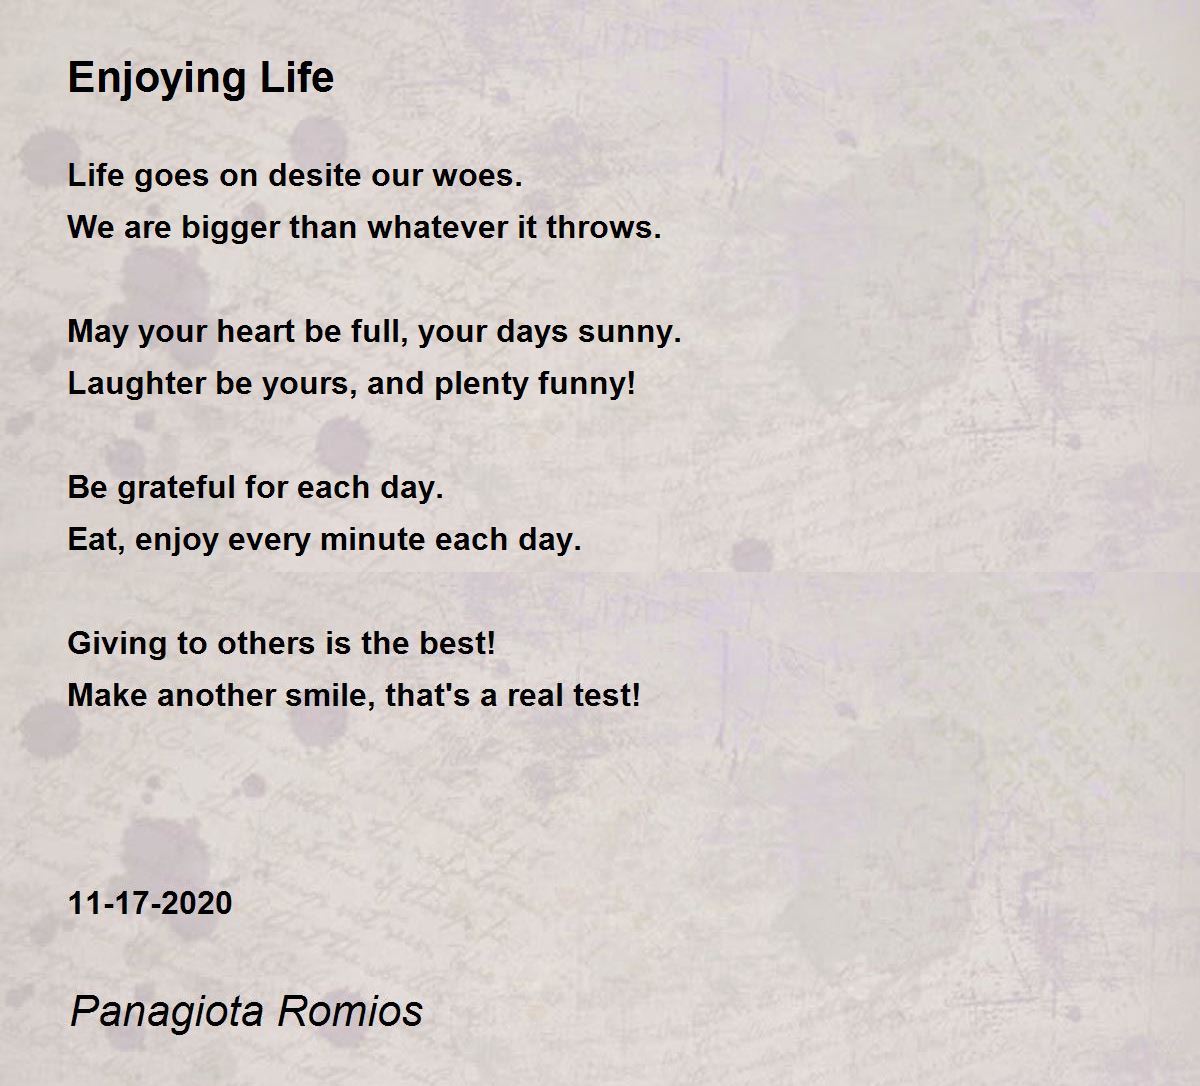 Enjoying Life - Enjoying Life Poem by Panagiota Romios